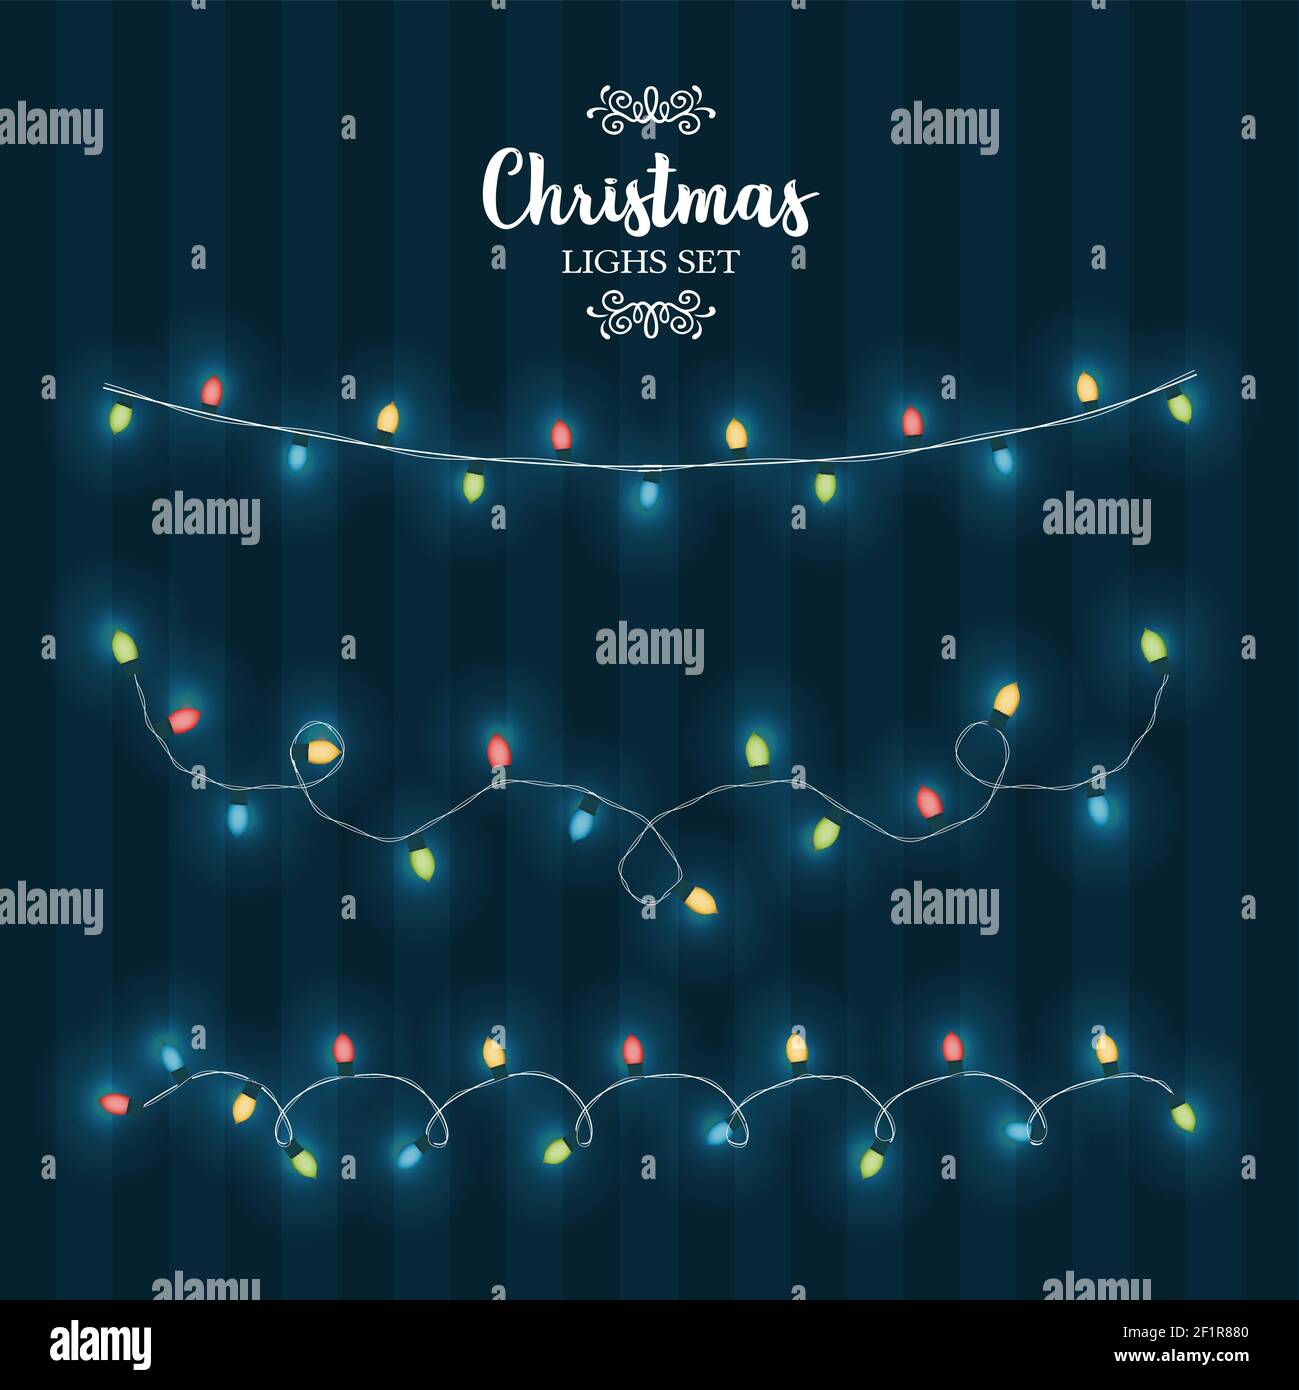 Weihnachtsbeleuchtung Set, glänzende Glühbirne String für festliche Weihnachten Weihnachtszeit Design. Traditionelle Girlande Dekoration Kollektion. Stock Vektor